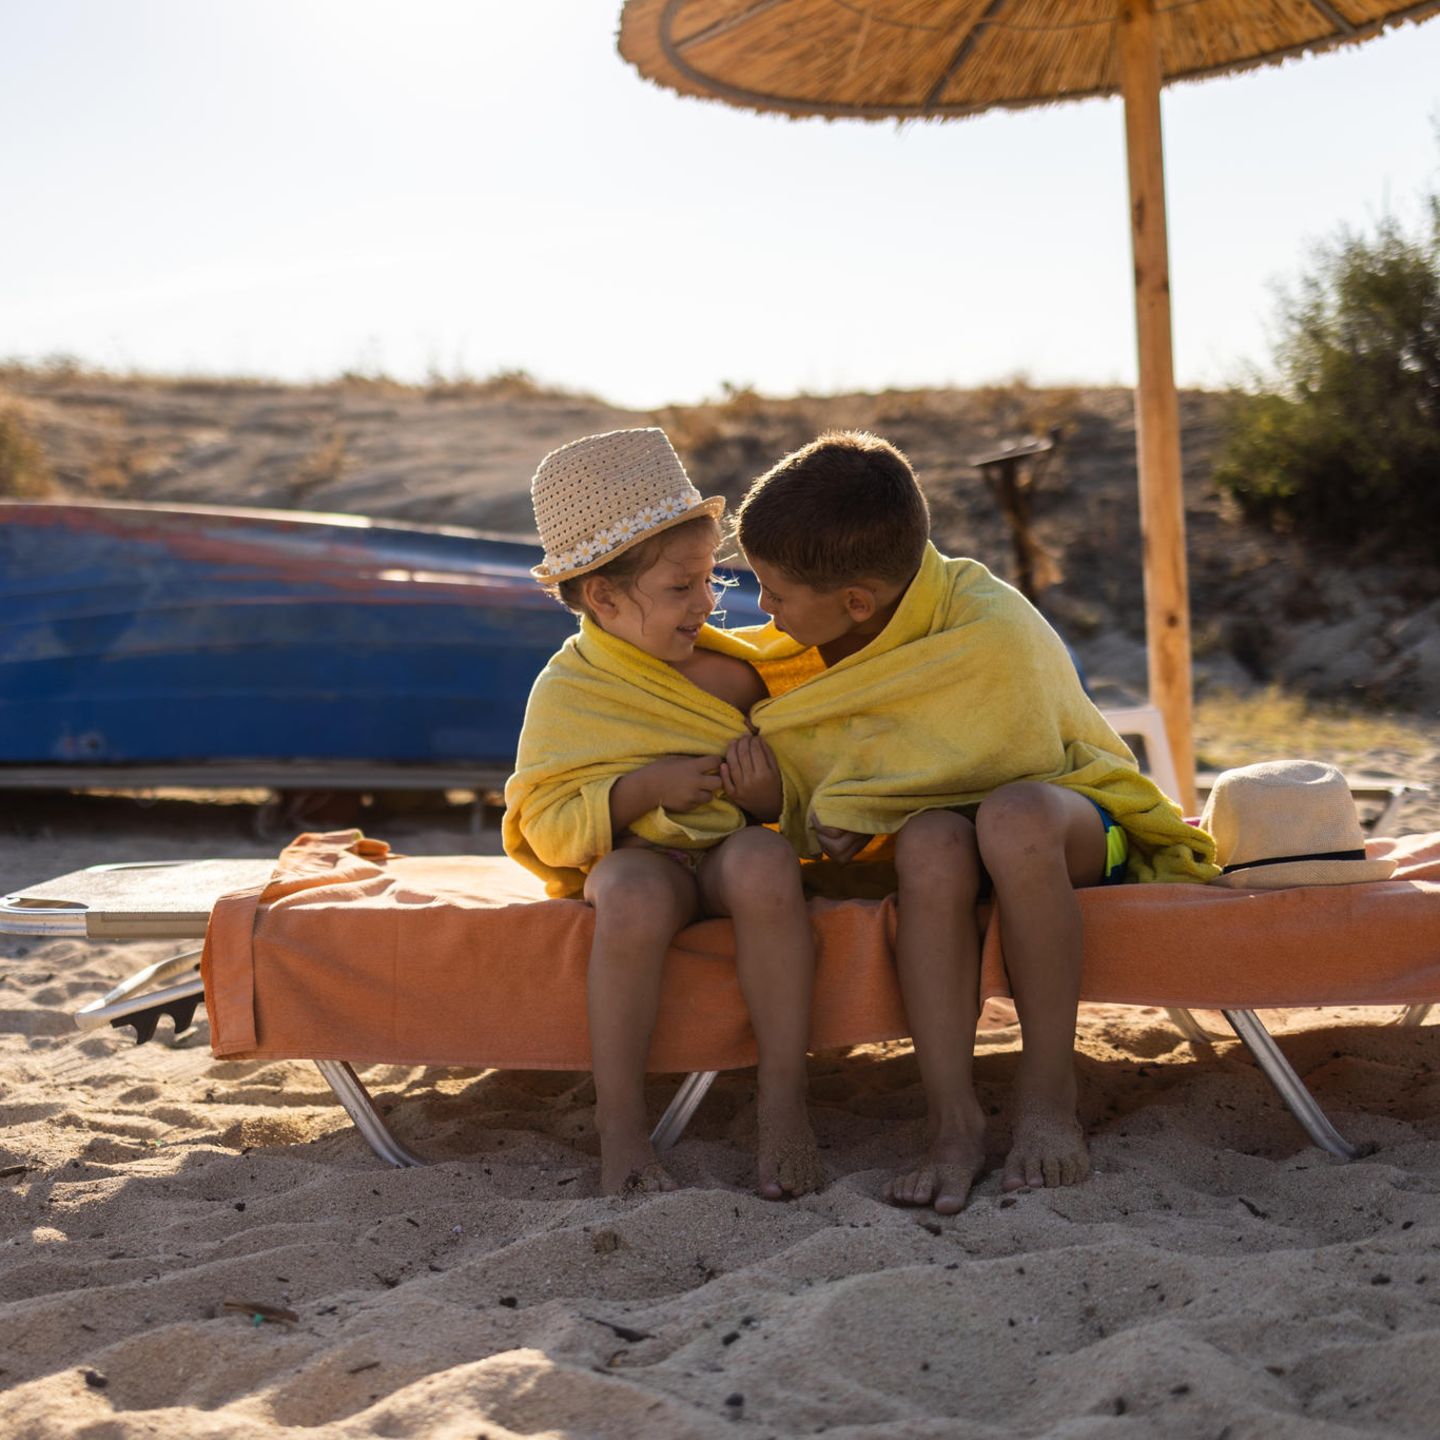 Sonnenschutz für Kinder: Warum wir sie besonders schützen müssen